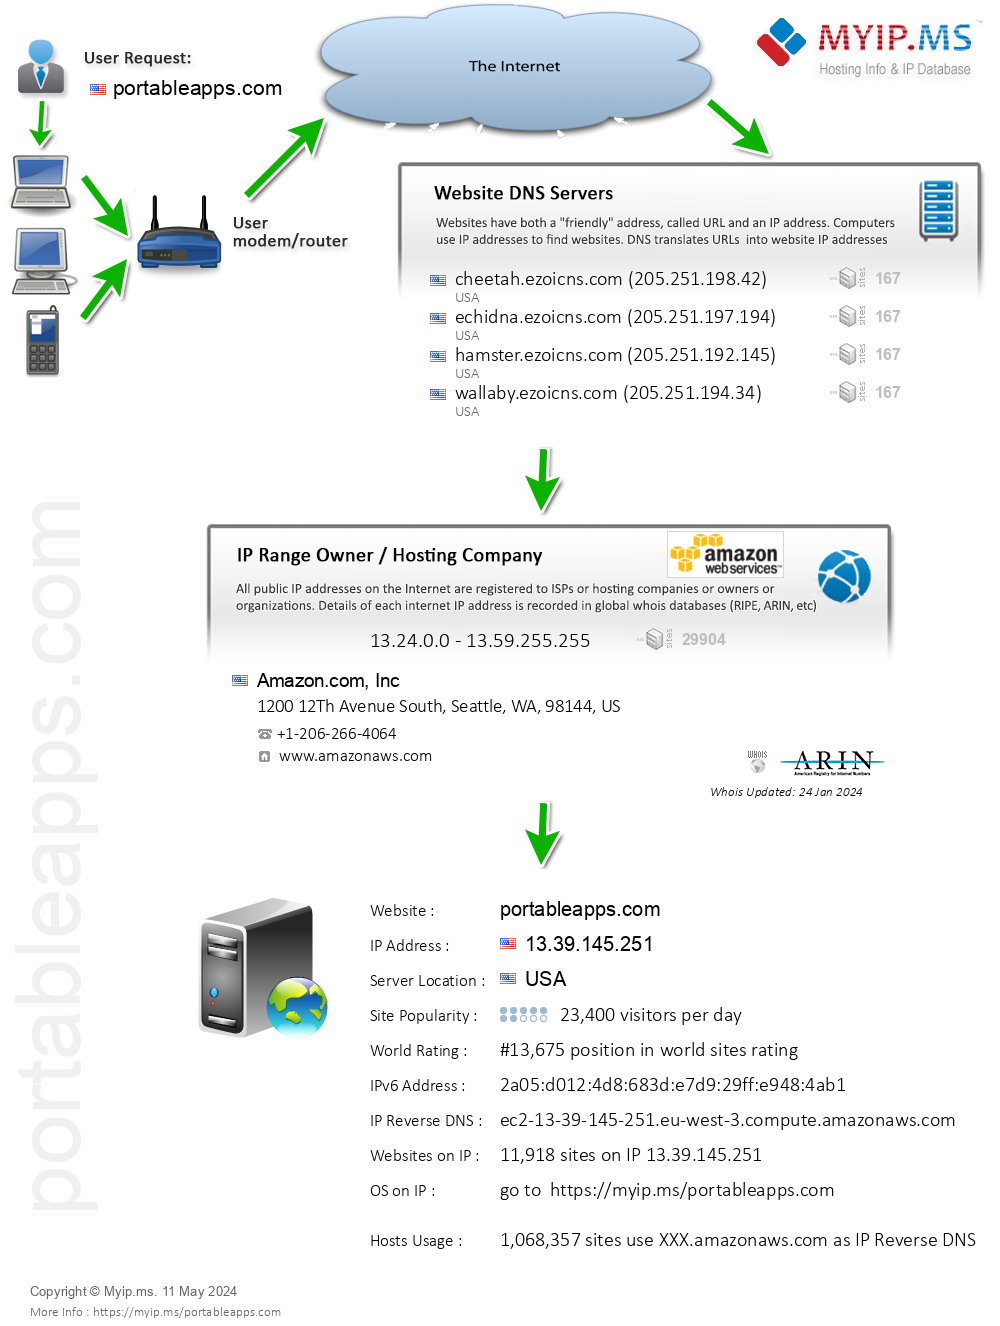 Portableapps.com - Website Hosting Visual IP Diagram